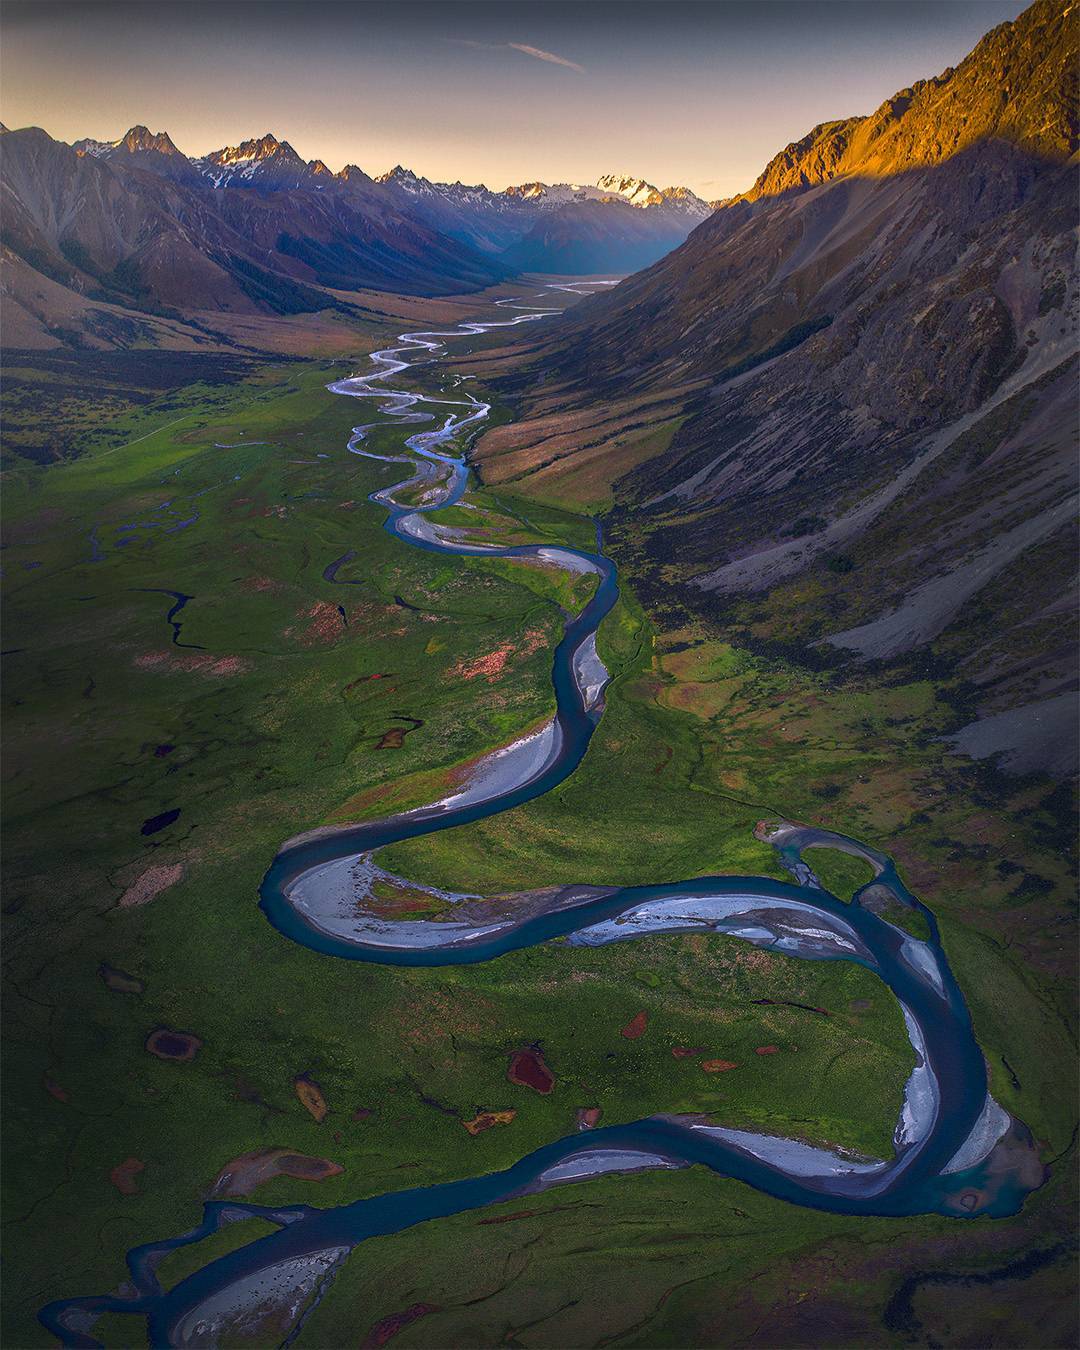  新西兰蜿蜒的河流，来自摄影师Max Rive。 